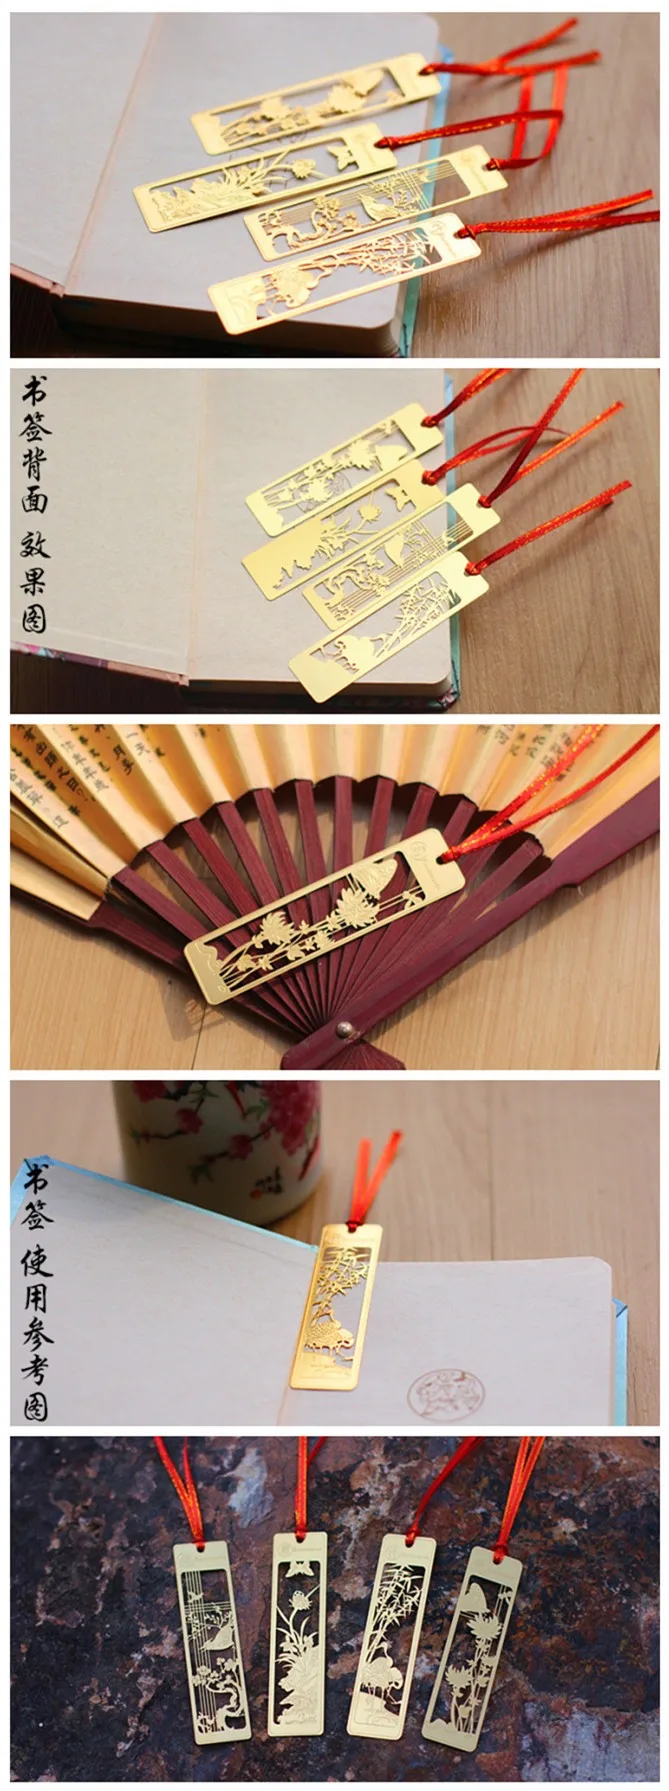 4 шт./лот, креативный китайский стиль, золотые металлические закладки, цветущая слива, Орхидея, бамбук, винтажная бабочка, закладки для книг, подарки для учителя